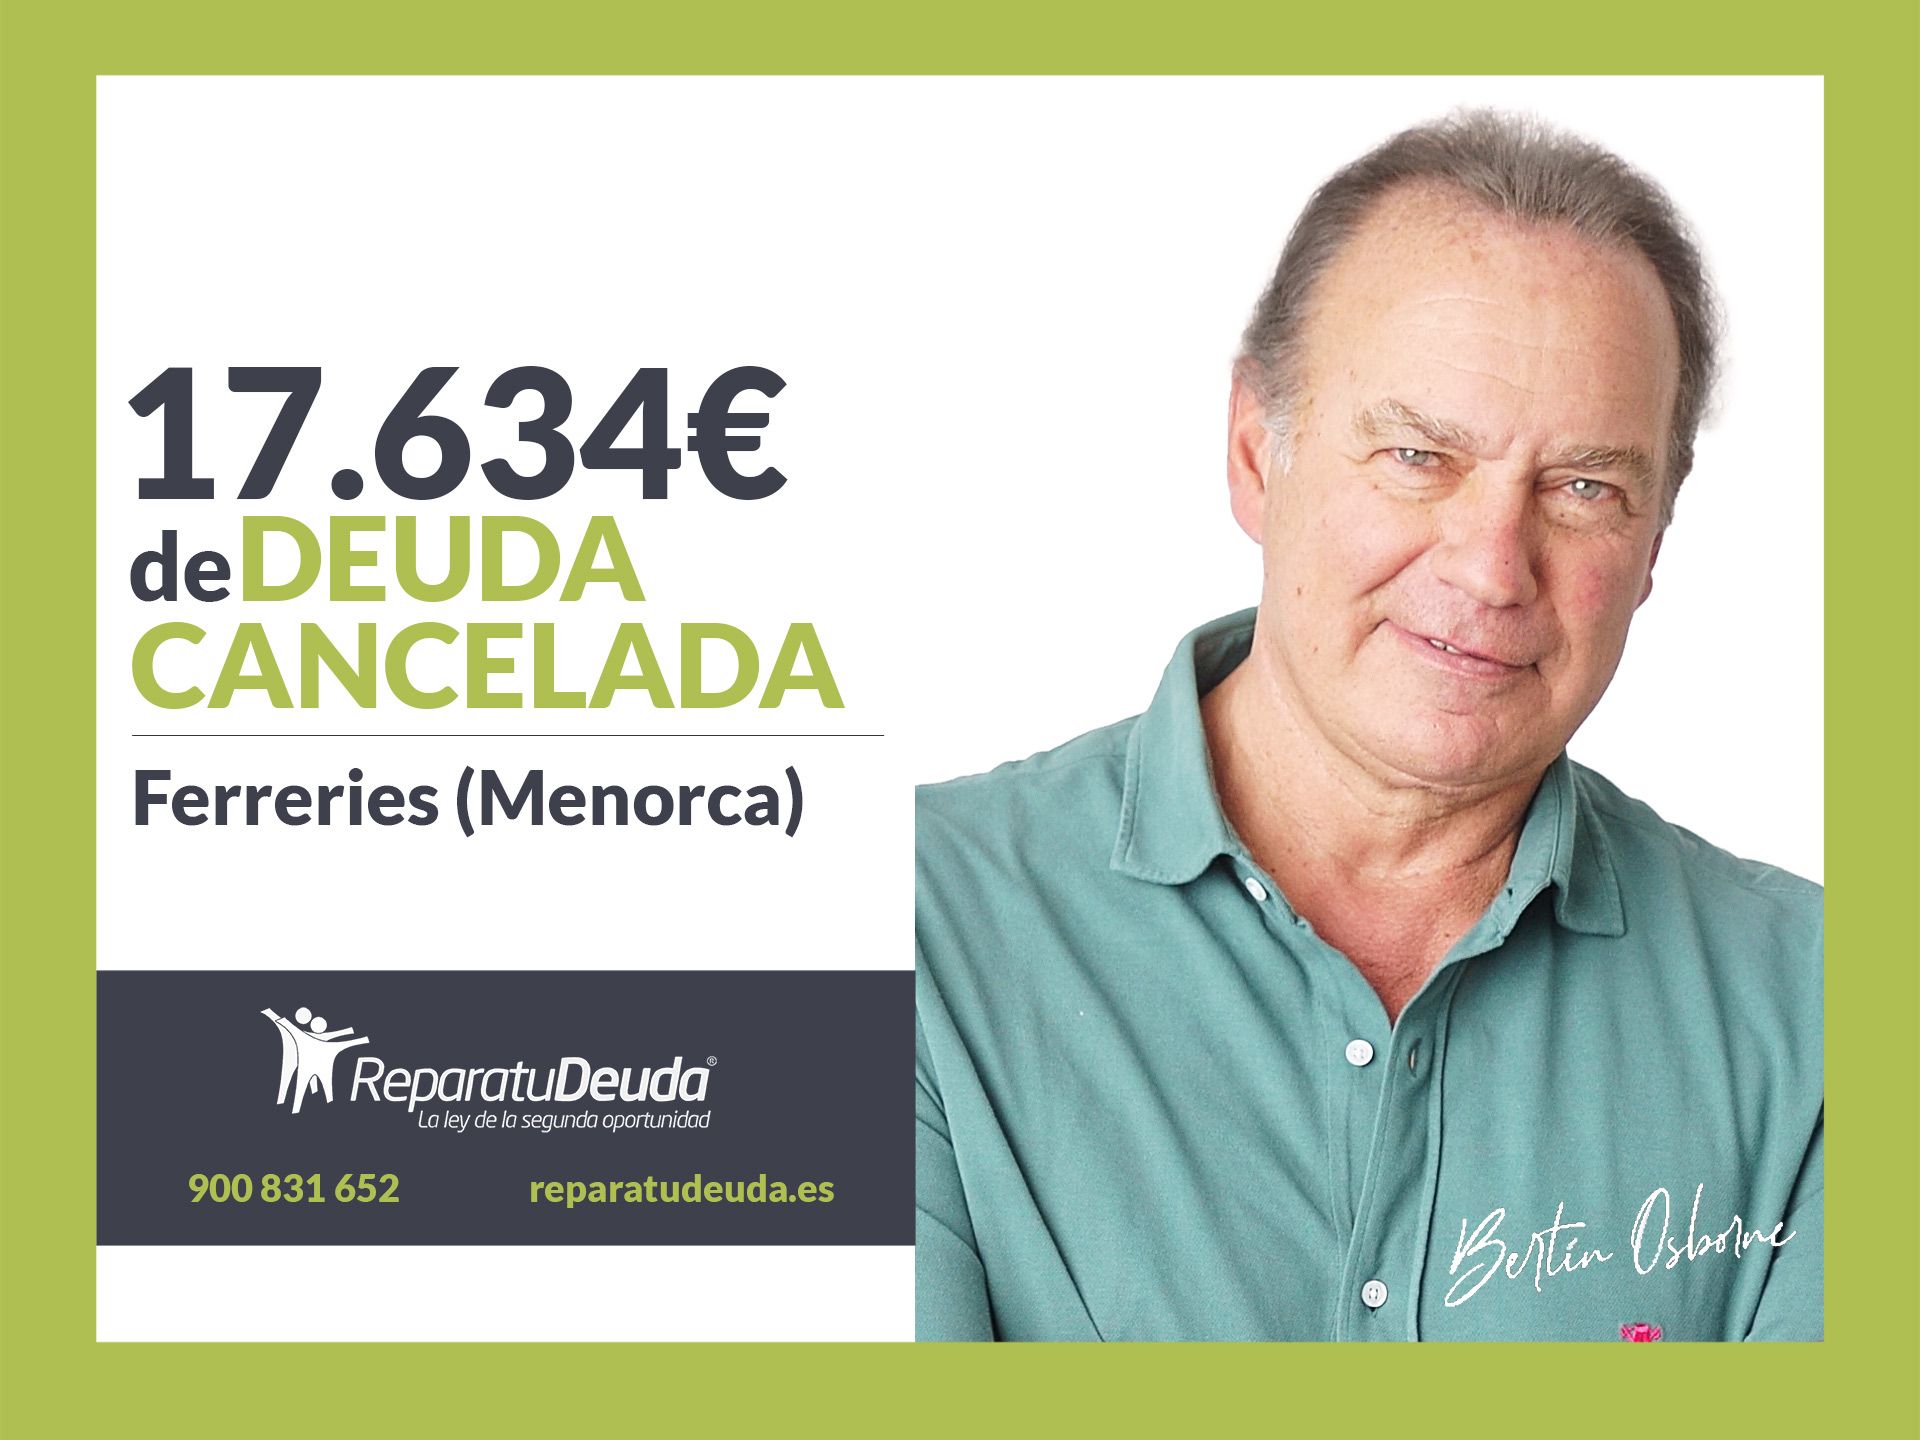 Repara tu Deuda abogados cancela 17.634? en Ferreries (Menorca) con la Ley de Segunda Oportunidad